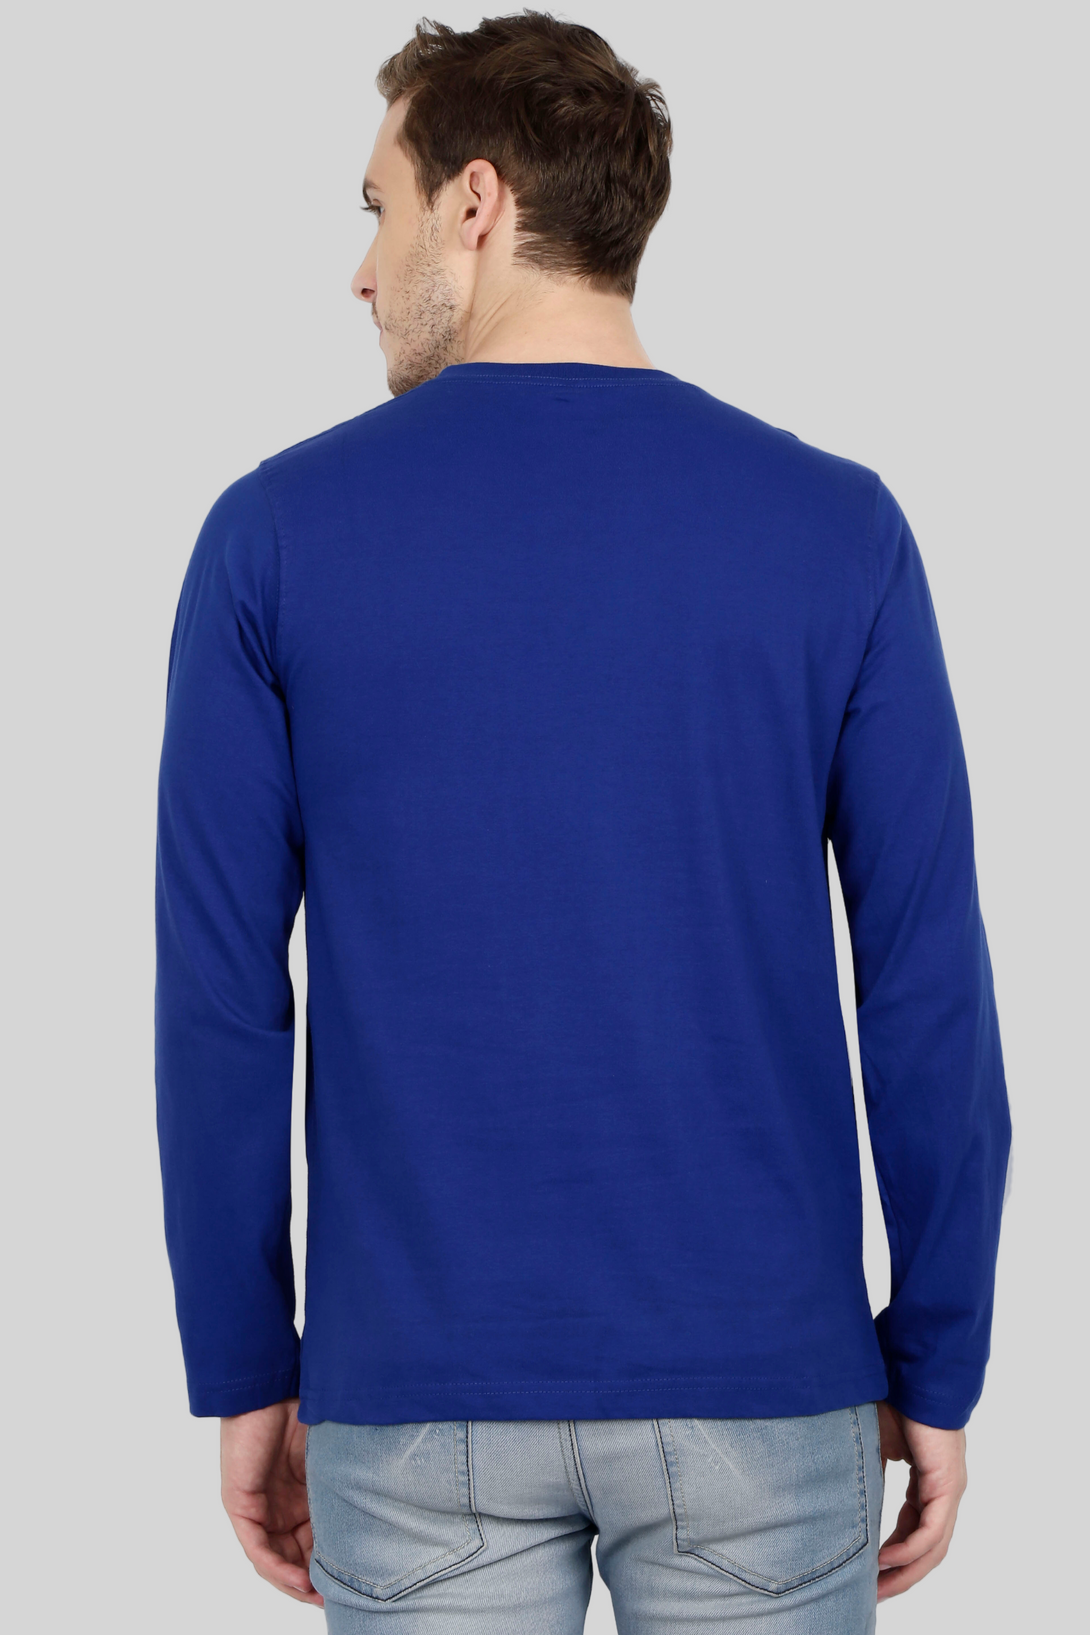 Royal Blue Full Sleeve T-Shirt For Men - WowWaves - 9